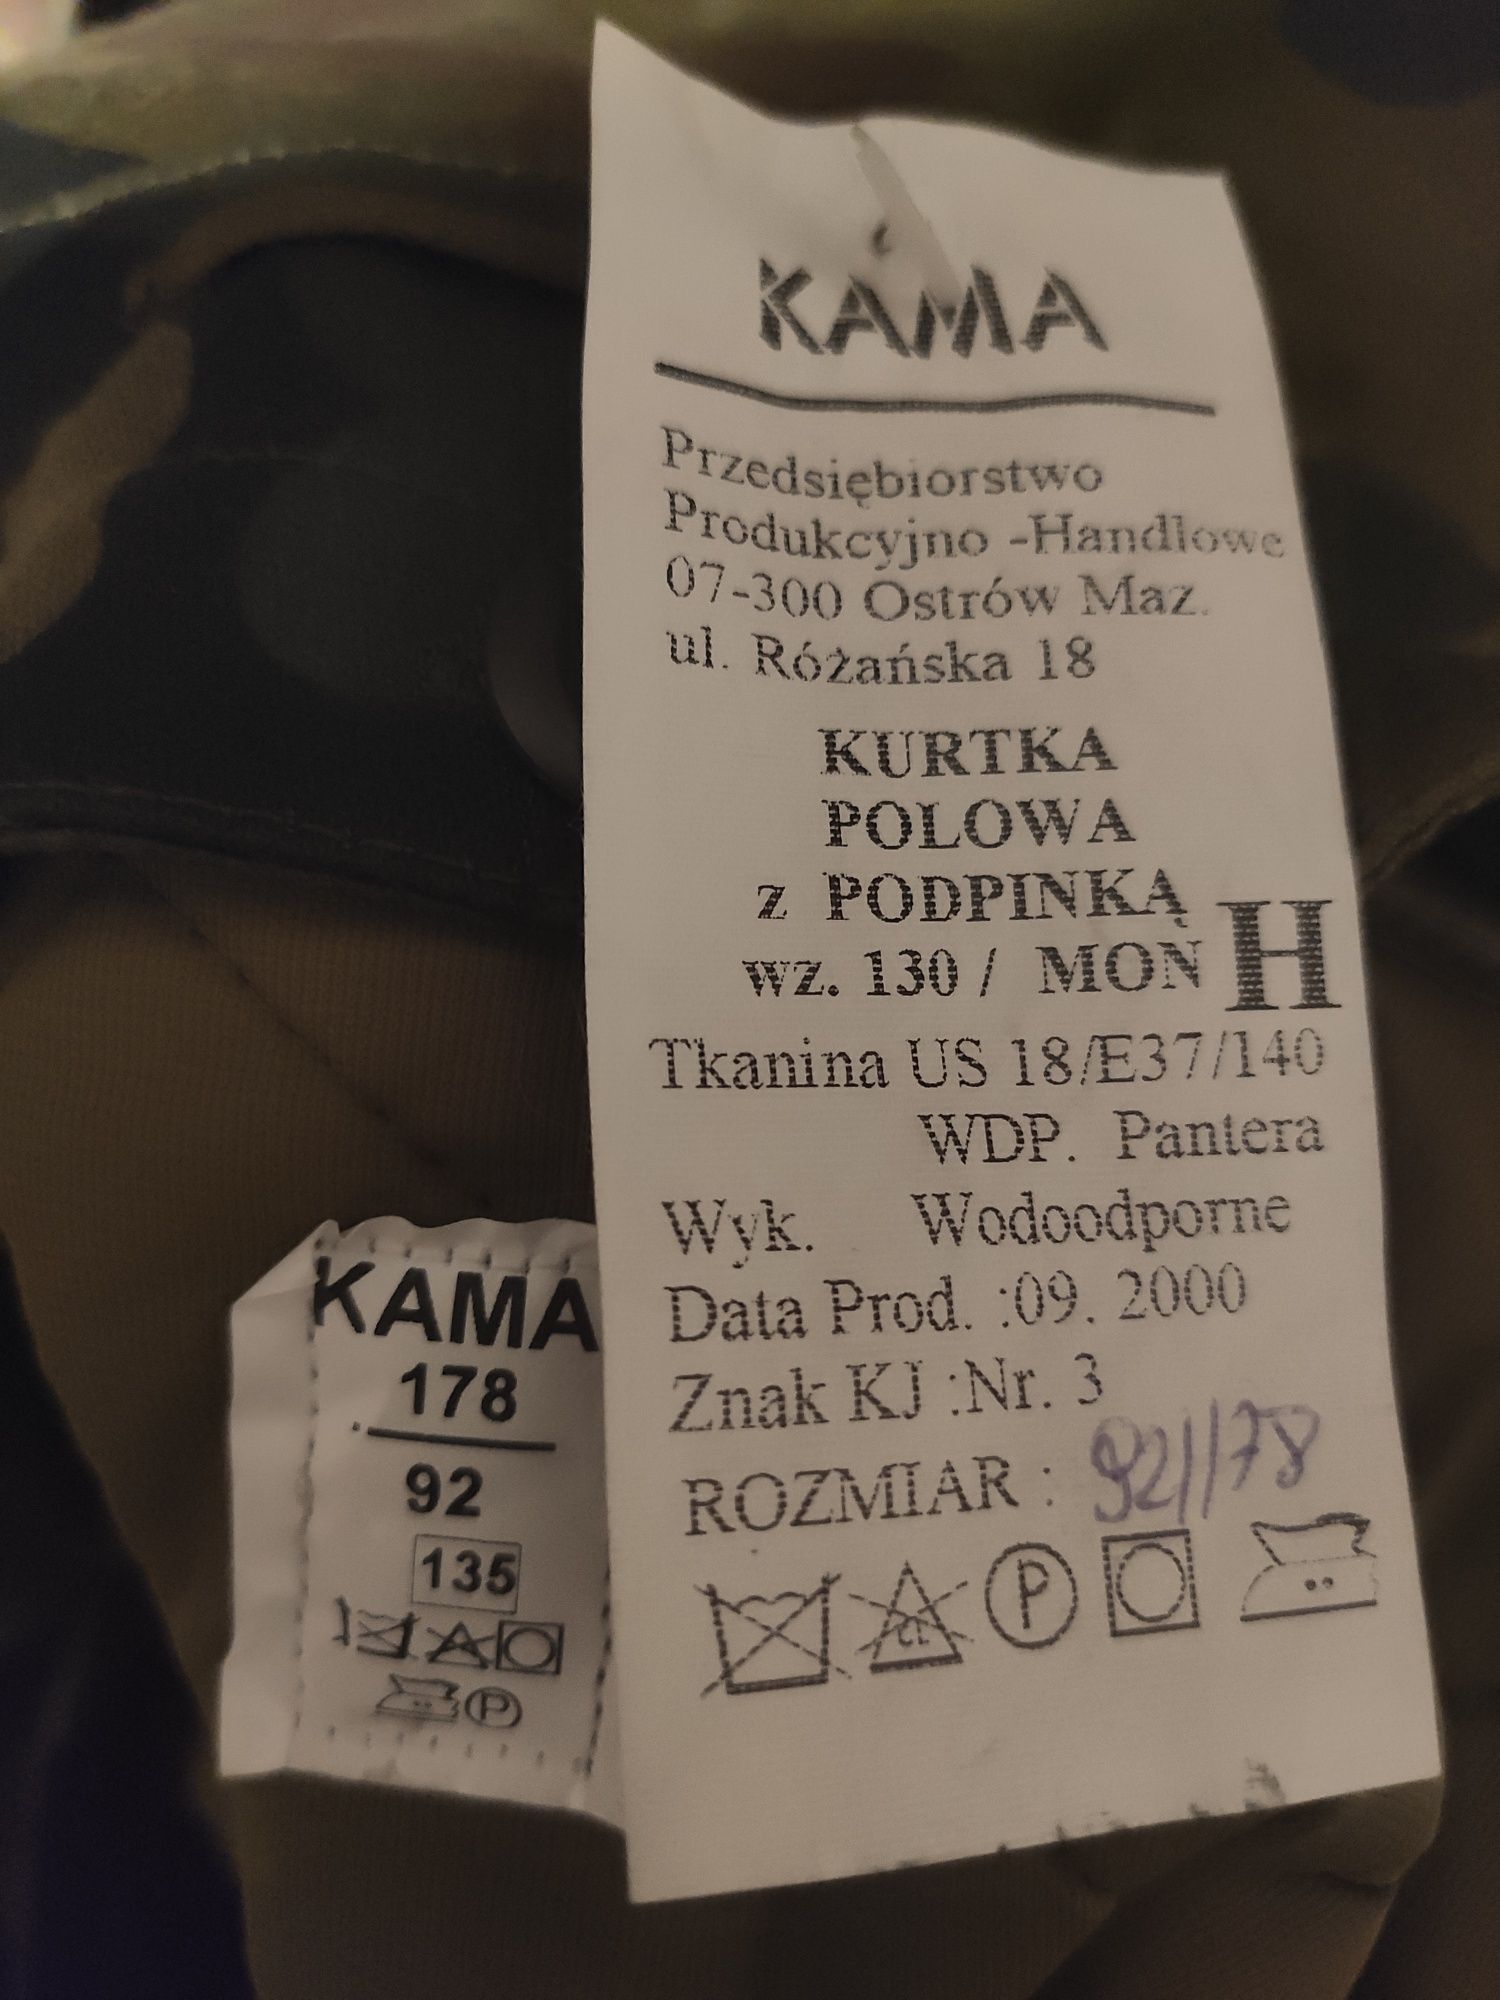 Kurtka nowa wojskowa Bechatka z podpinką wz. 93 130/MON rozm. 178/92